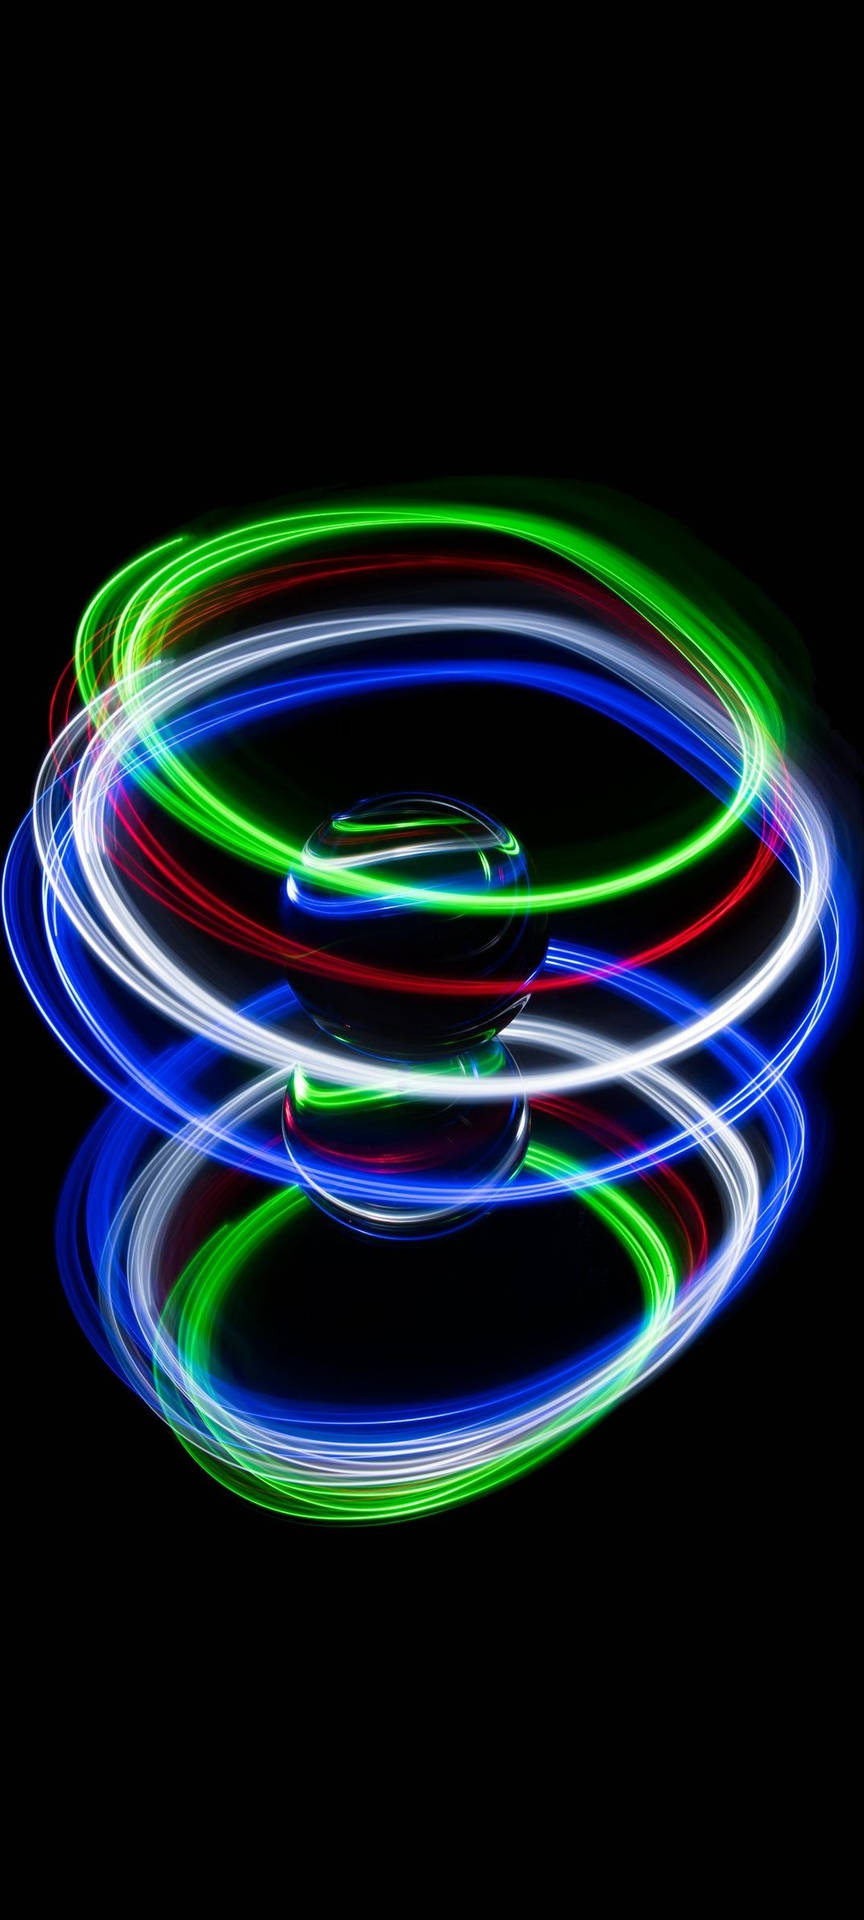 Bakgrundsbildför Dator Eller Mobil: 3d-boll Neon Telefon. Wallpaper